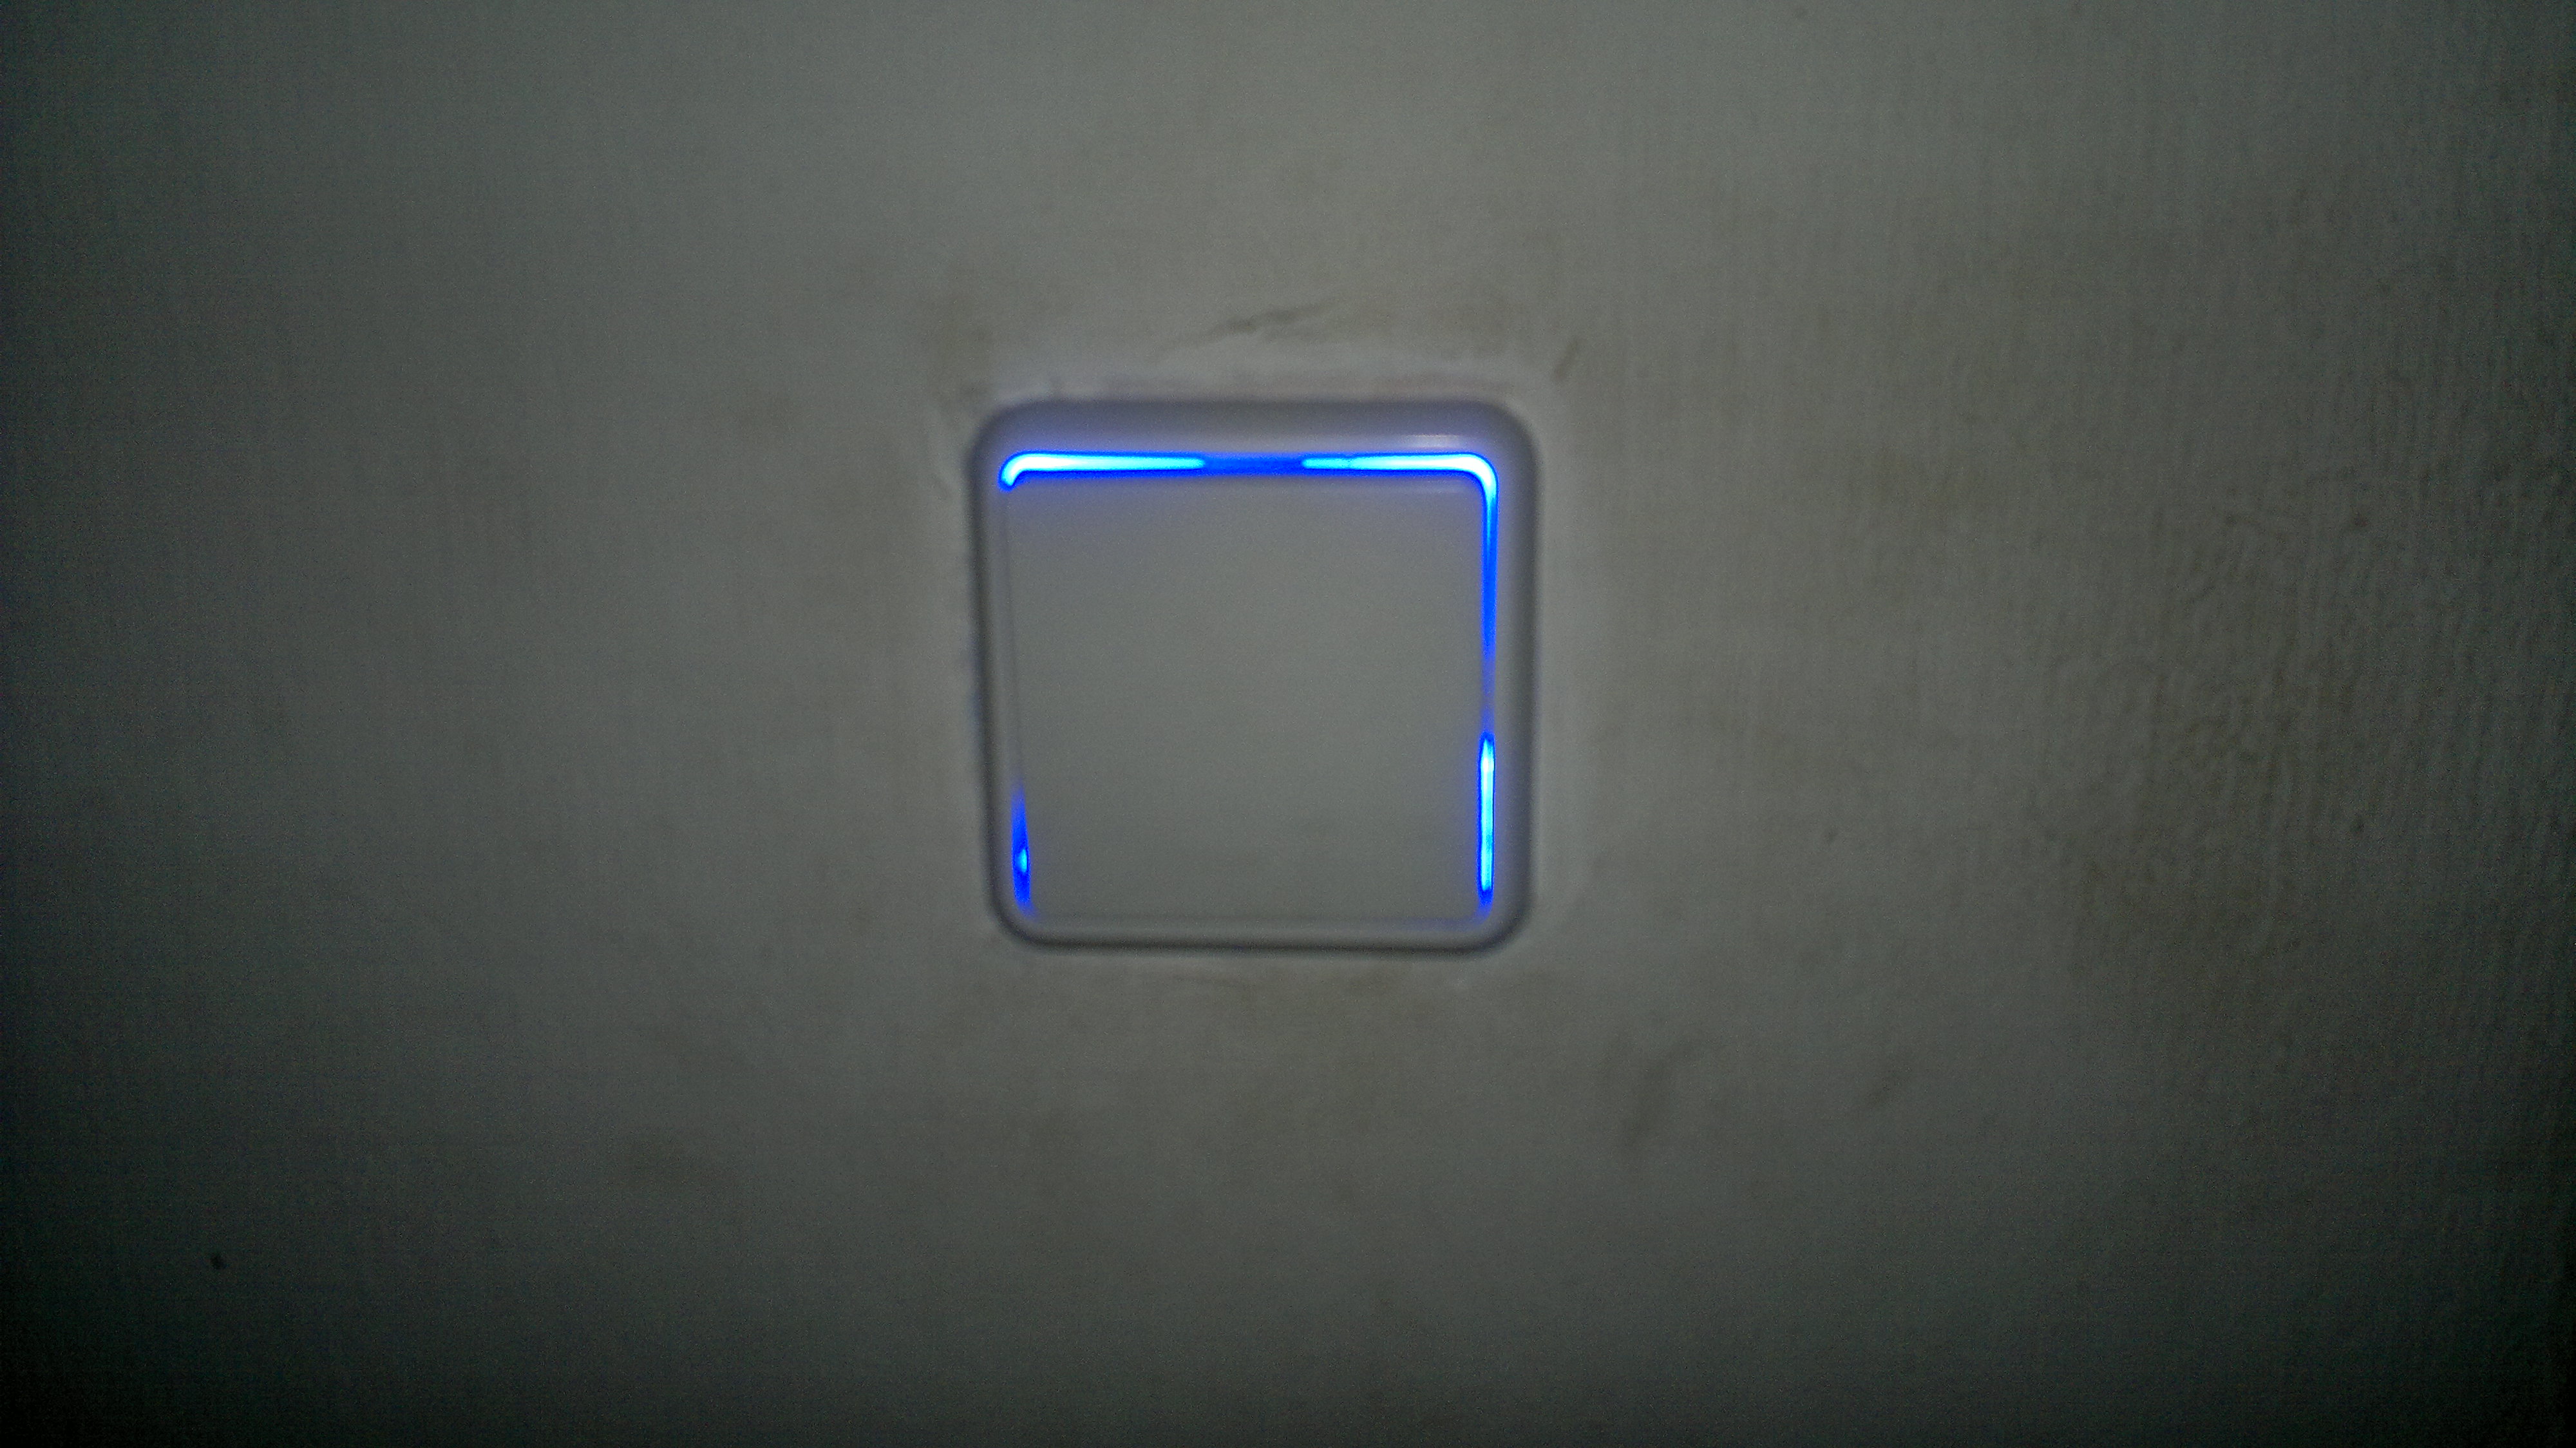 Выключатель с подсветкой: схема подключения светодиодной подсветки клавиш, как своими руками правильно подключить обычный и проходной переключатель со светодиодами > свет и светильники